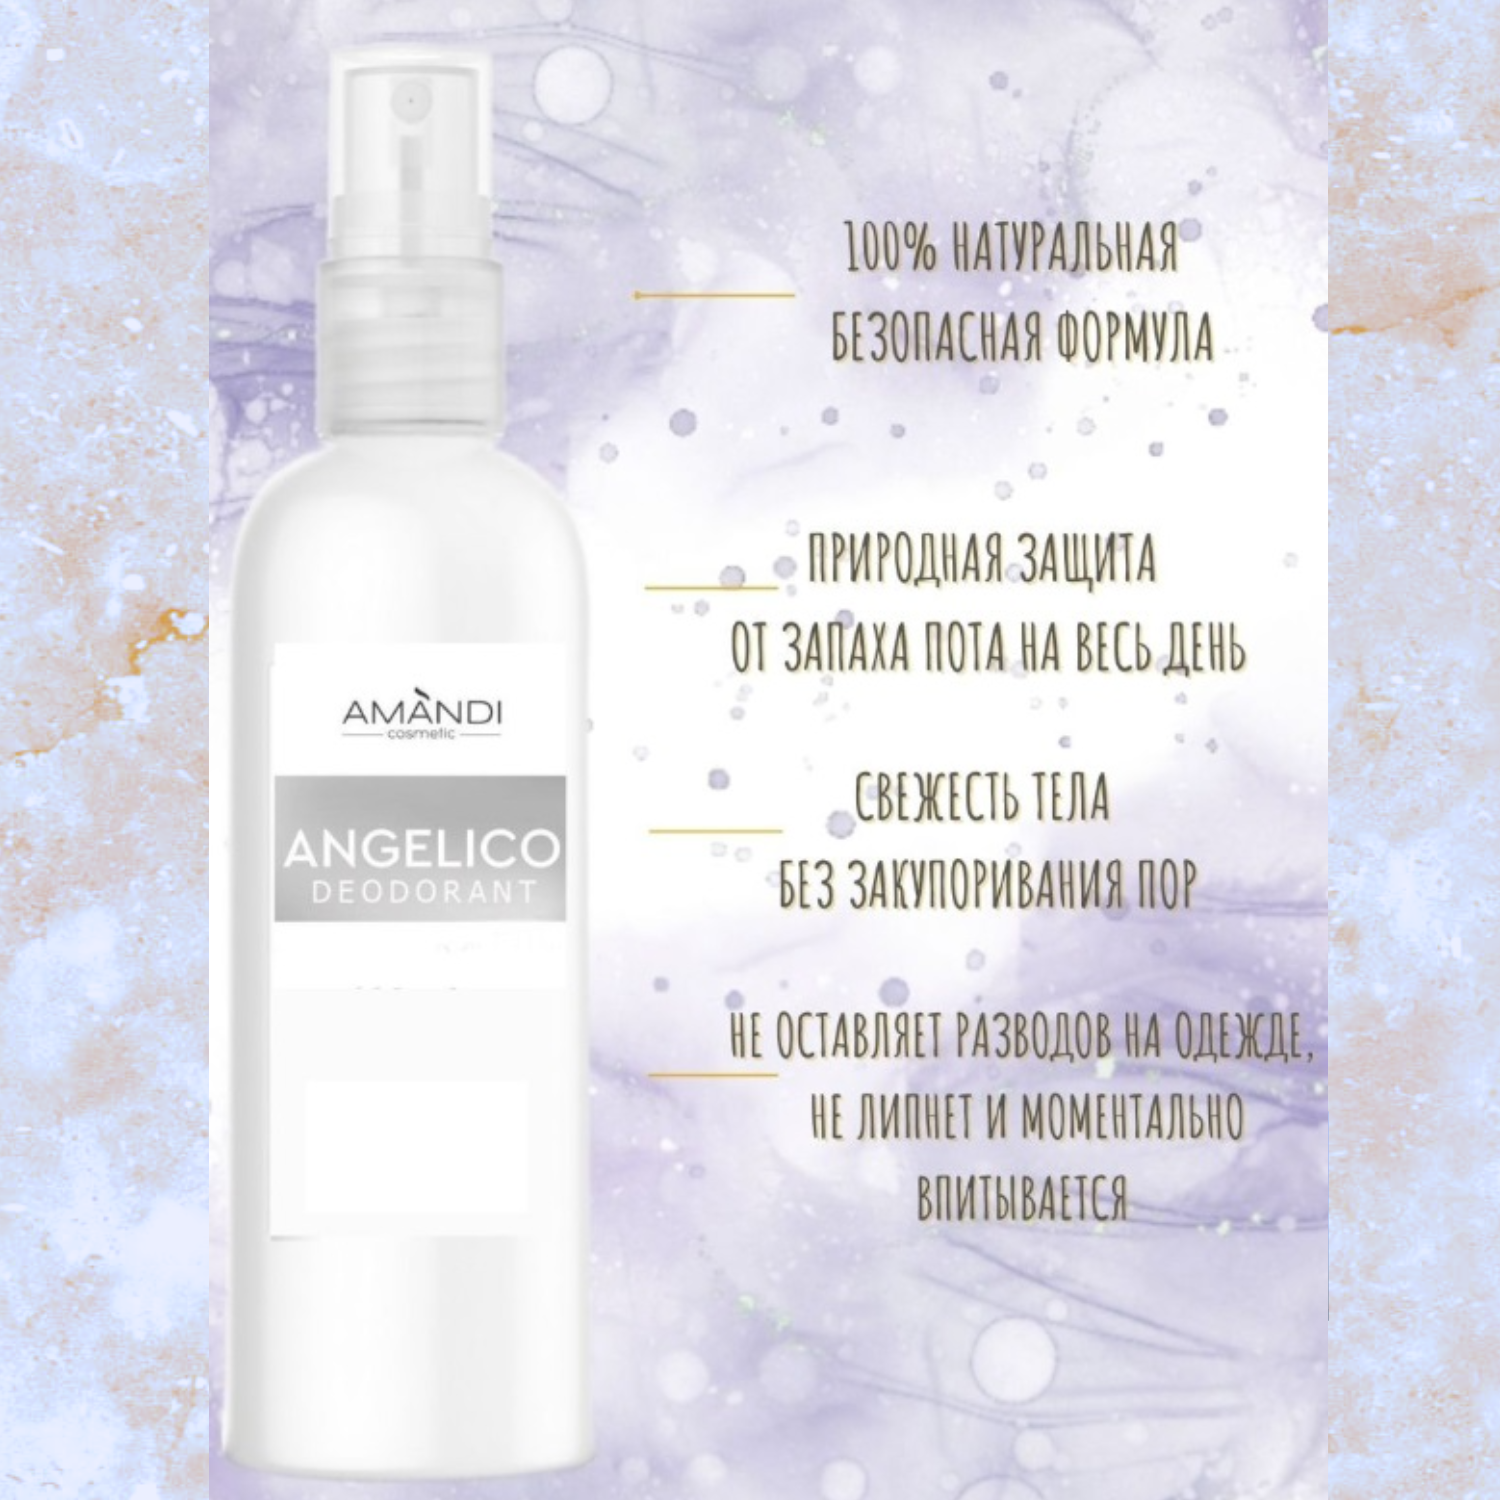 Минеральный дезодорант-спрей AMANDI Angelico цветочно-фруковый аромат 100 мл - фото 3